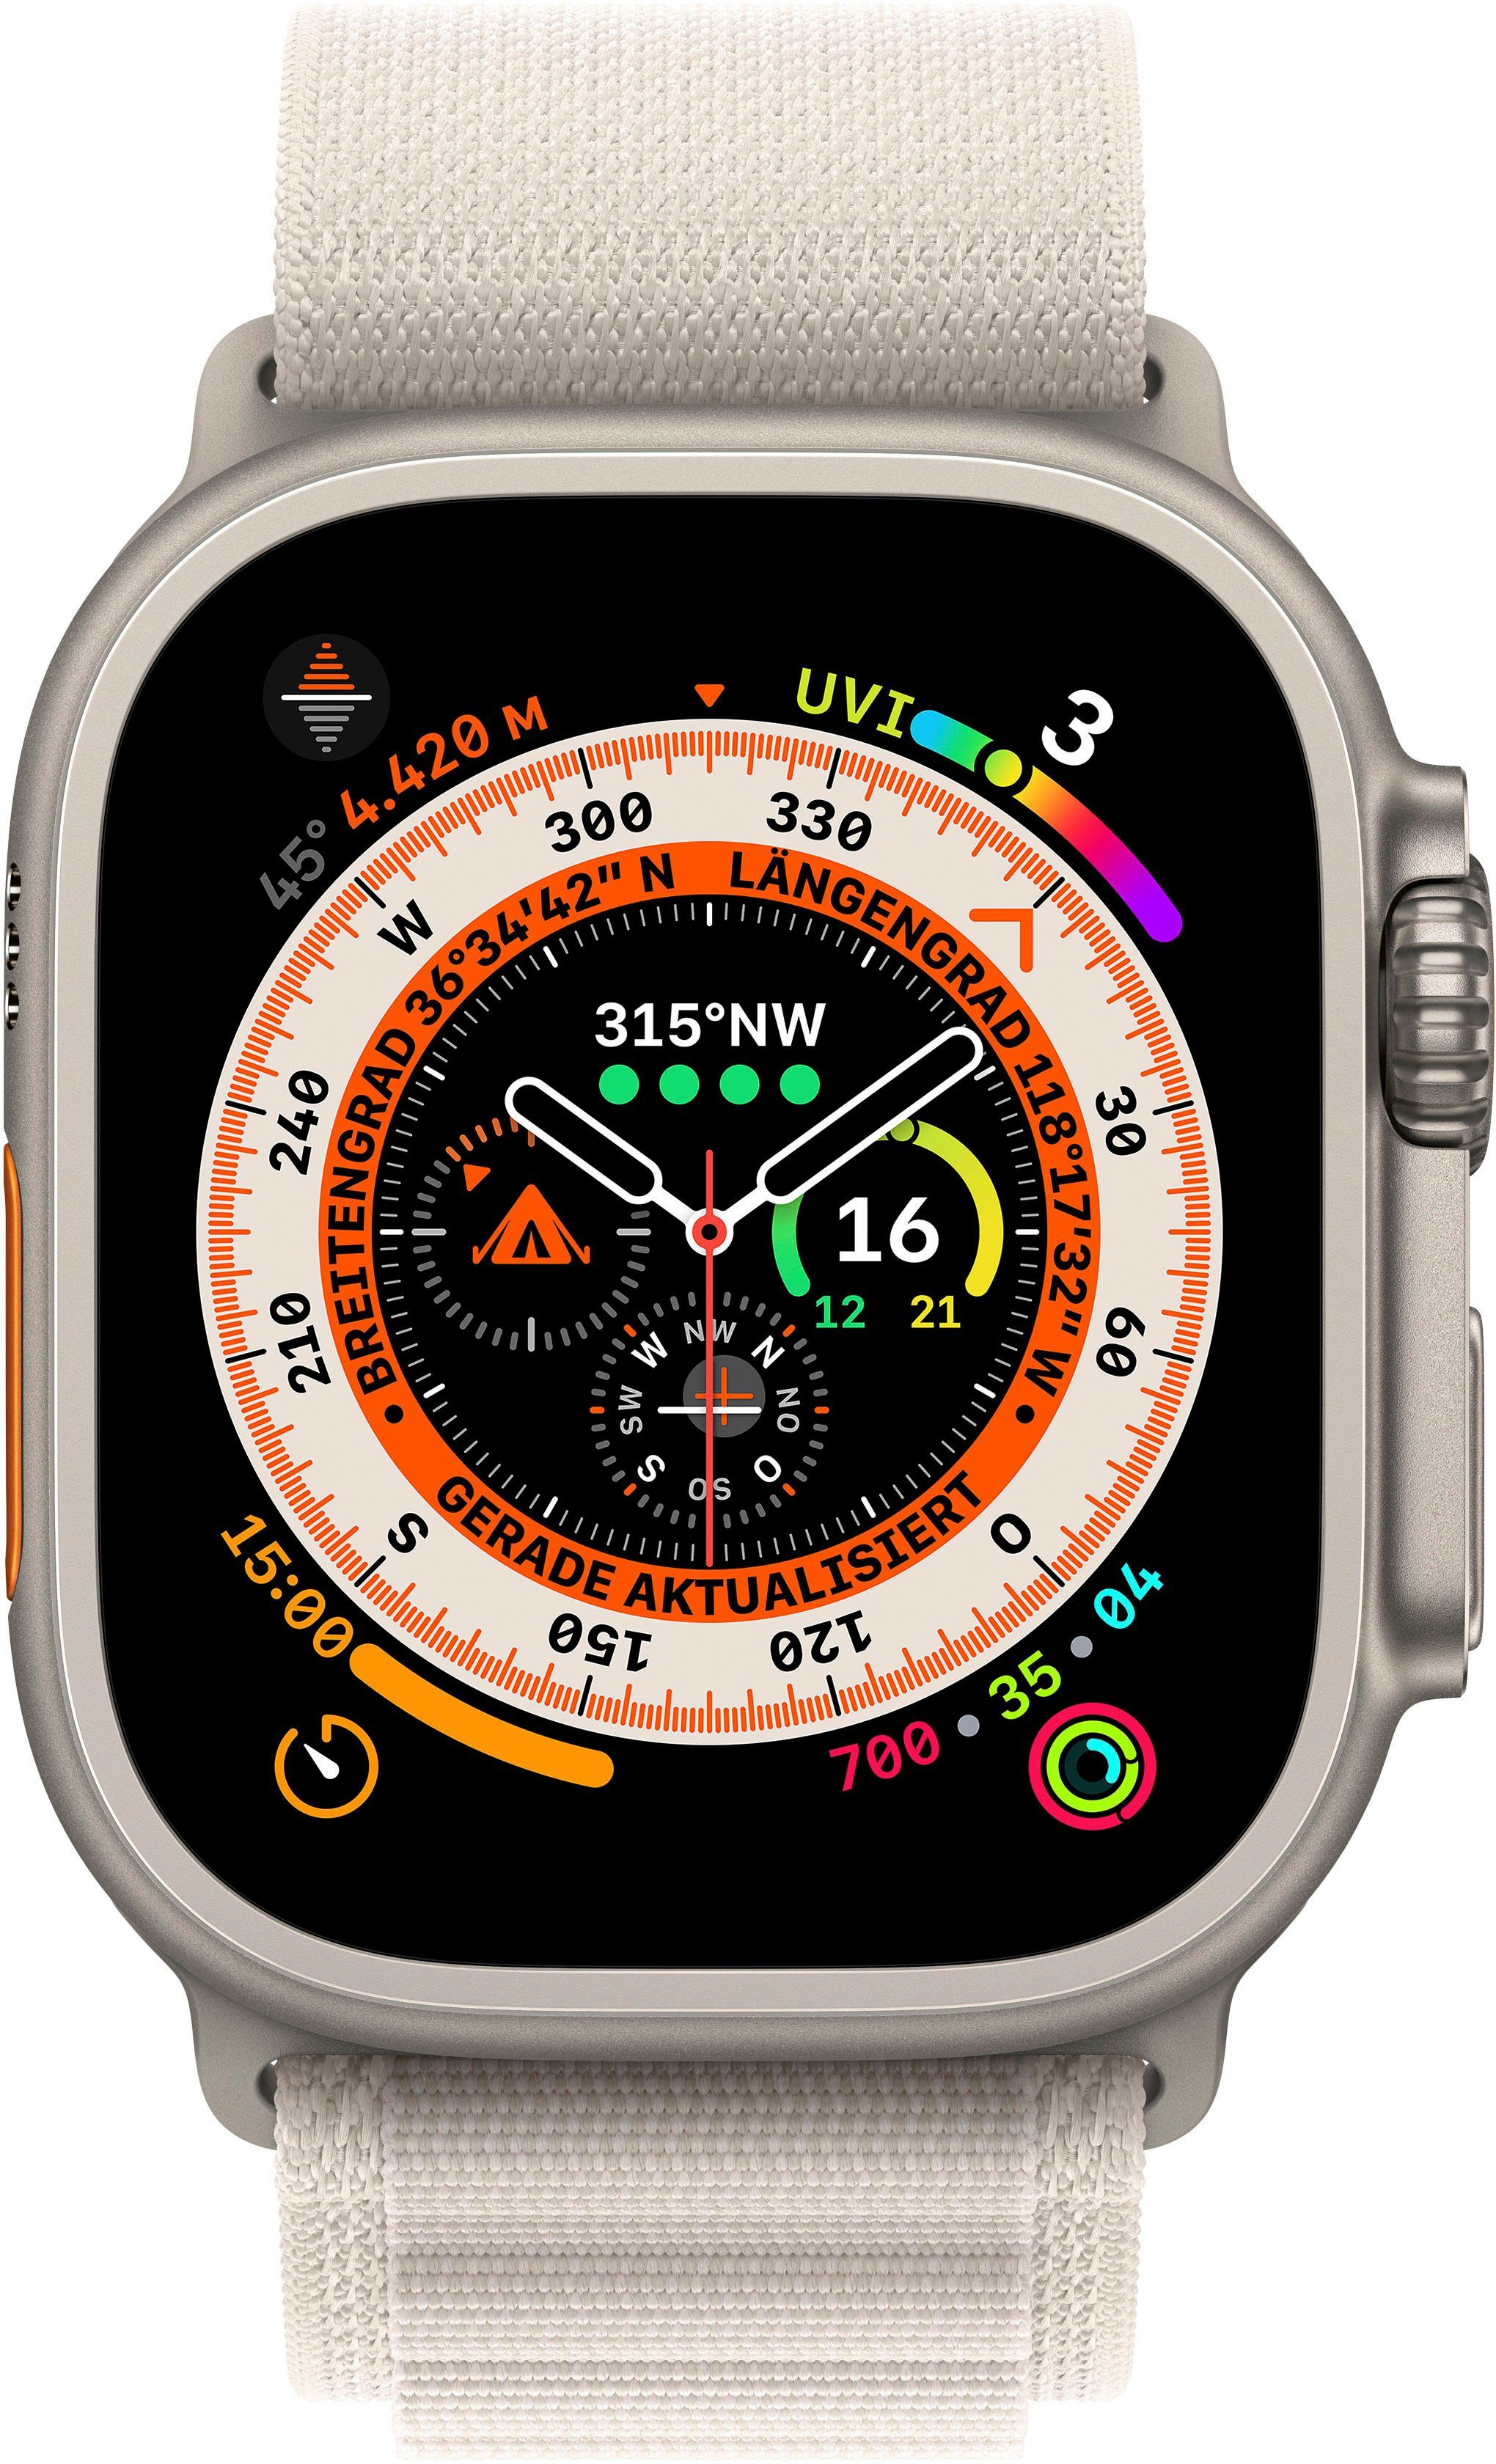 Anforderungen Ultra Gemacht Apple Starlight extreme Watch Alpine M Alpine Cellular GPS Watch, + 49mm Medium für